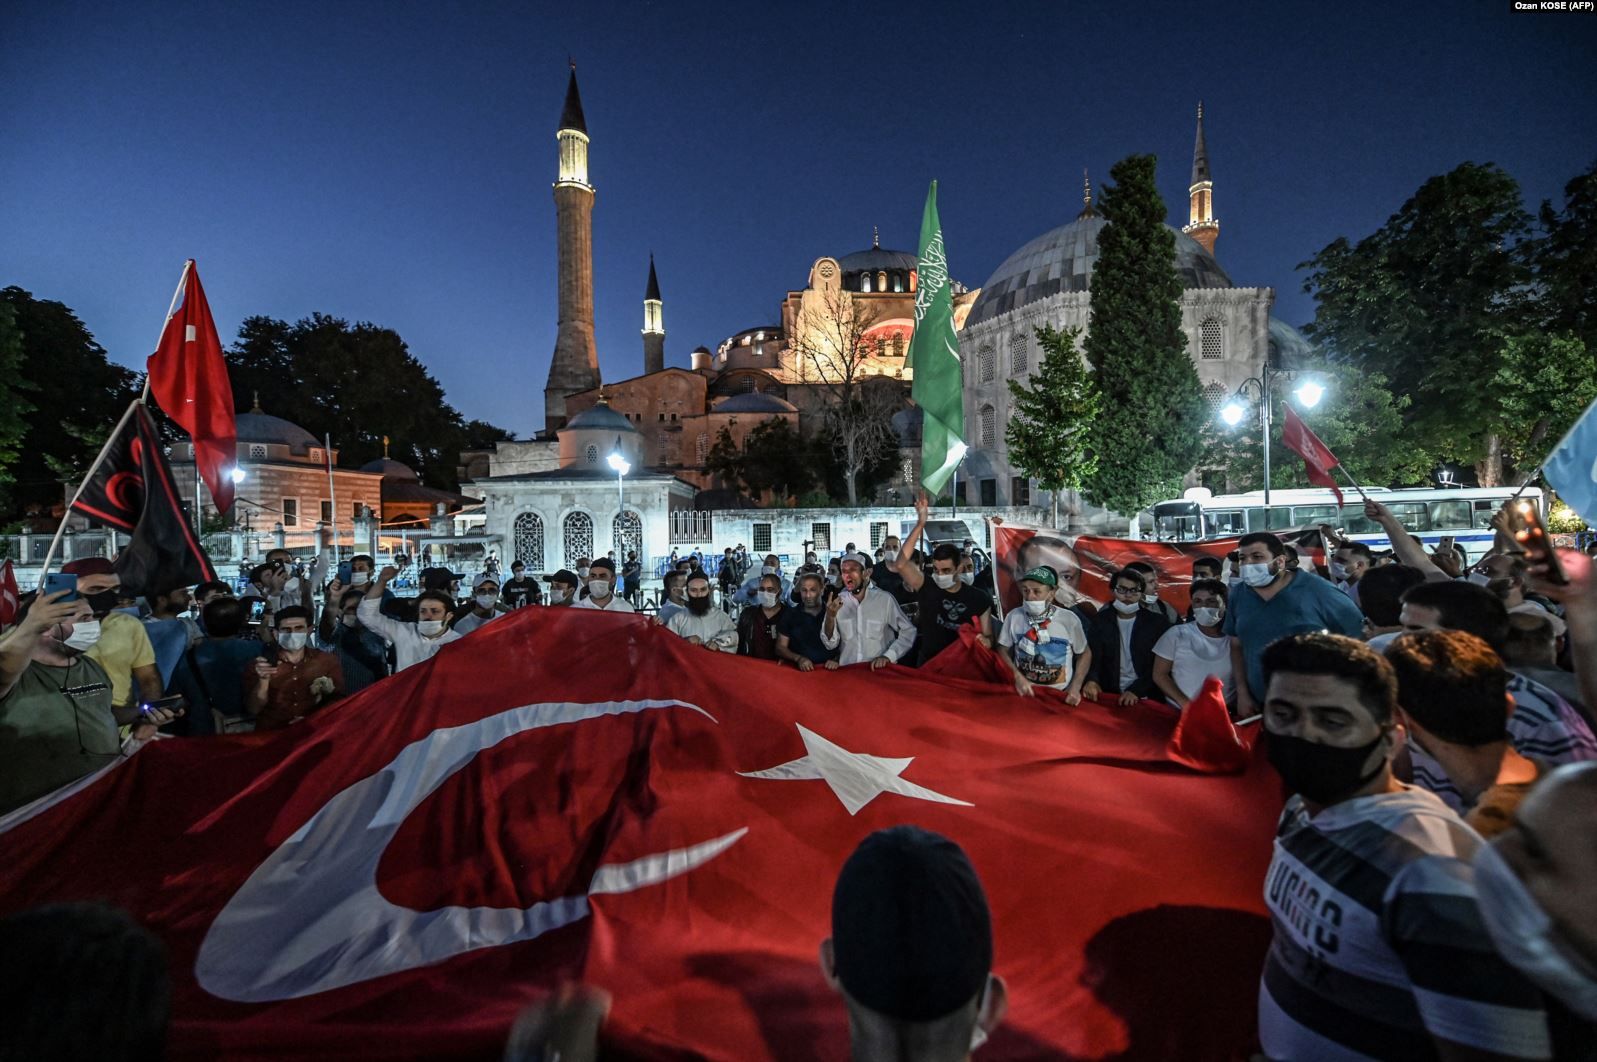 Что ждет Святую Софию в Стамбуле. Рассказываем на примерах памятников истории, уже ставших мечетями в Турции - фото 53800